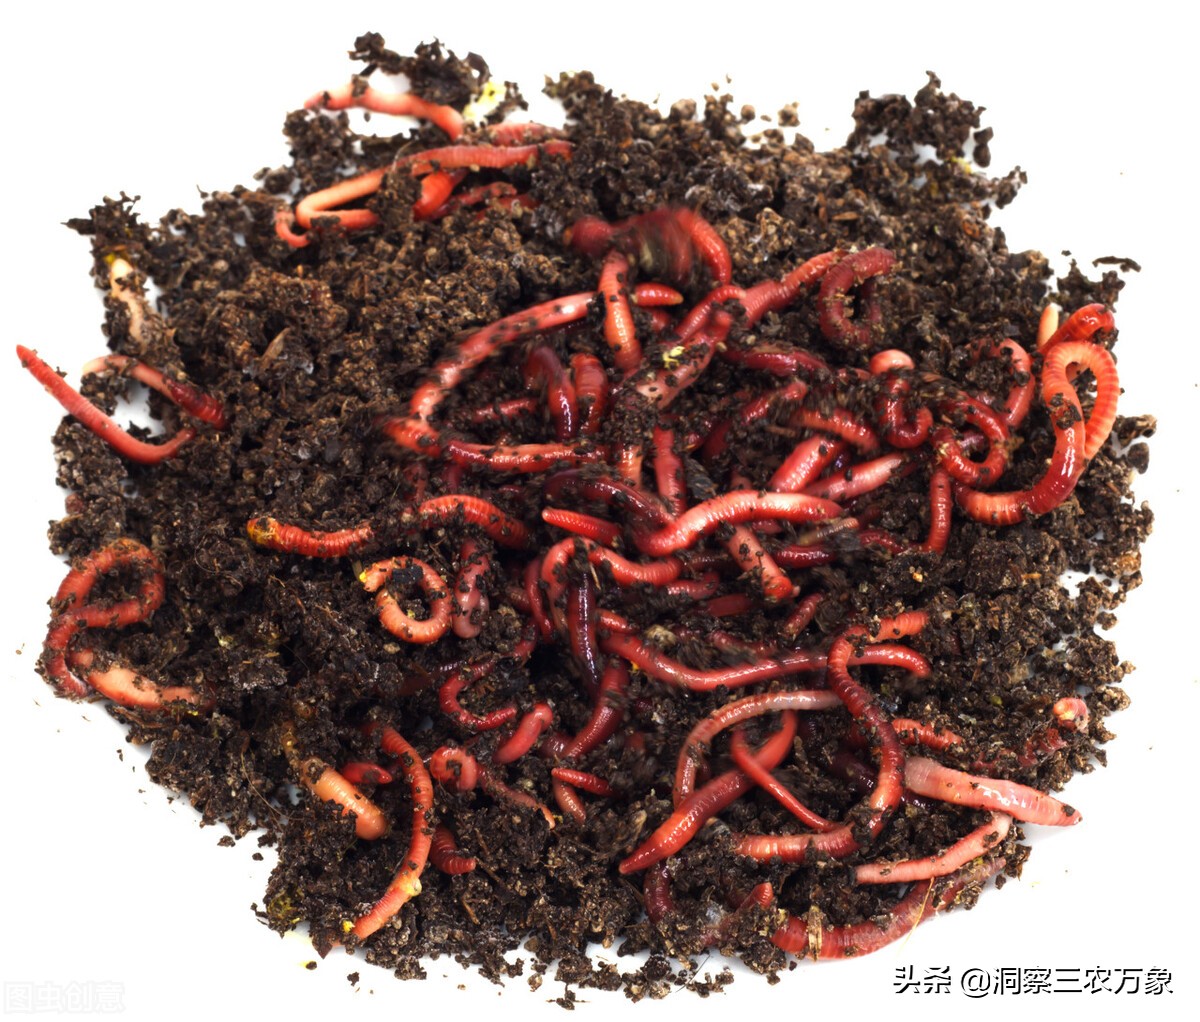 经常清洗喂养养殖红虫的过程中需要及时清洗饲养用的器皿,保持红虫